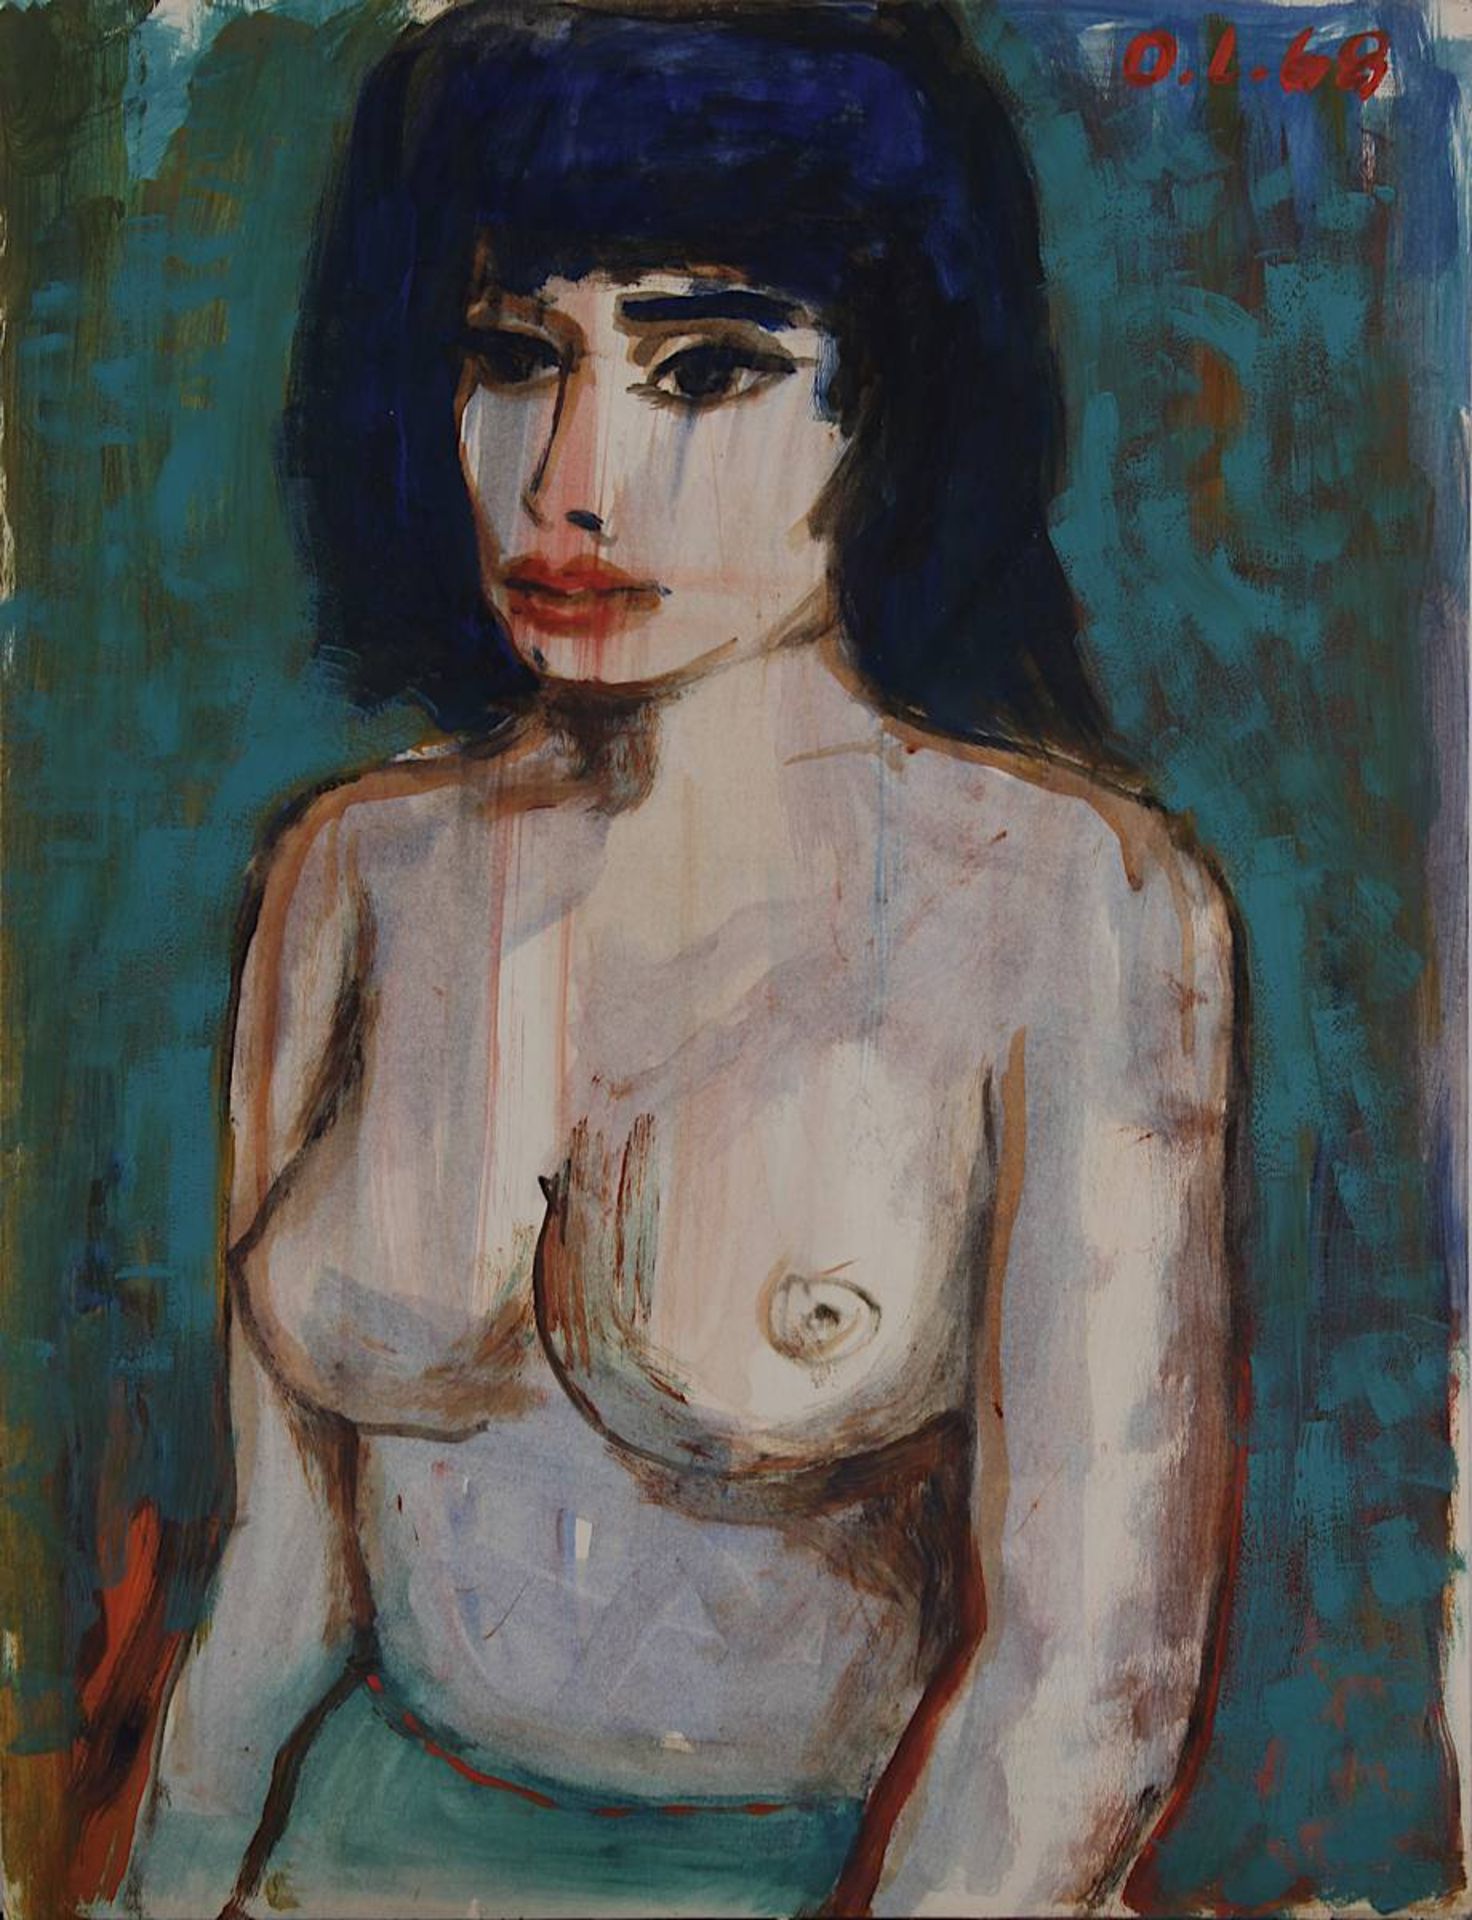 Lackenmacher, Otto (Saarbrücken 1927 - 1988 Saarbrücken), junge Frau mit blau-schwarzem Haar als